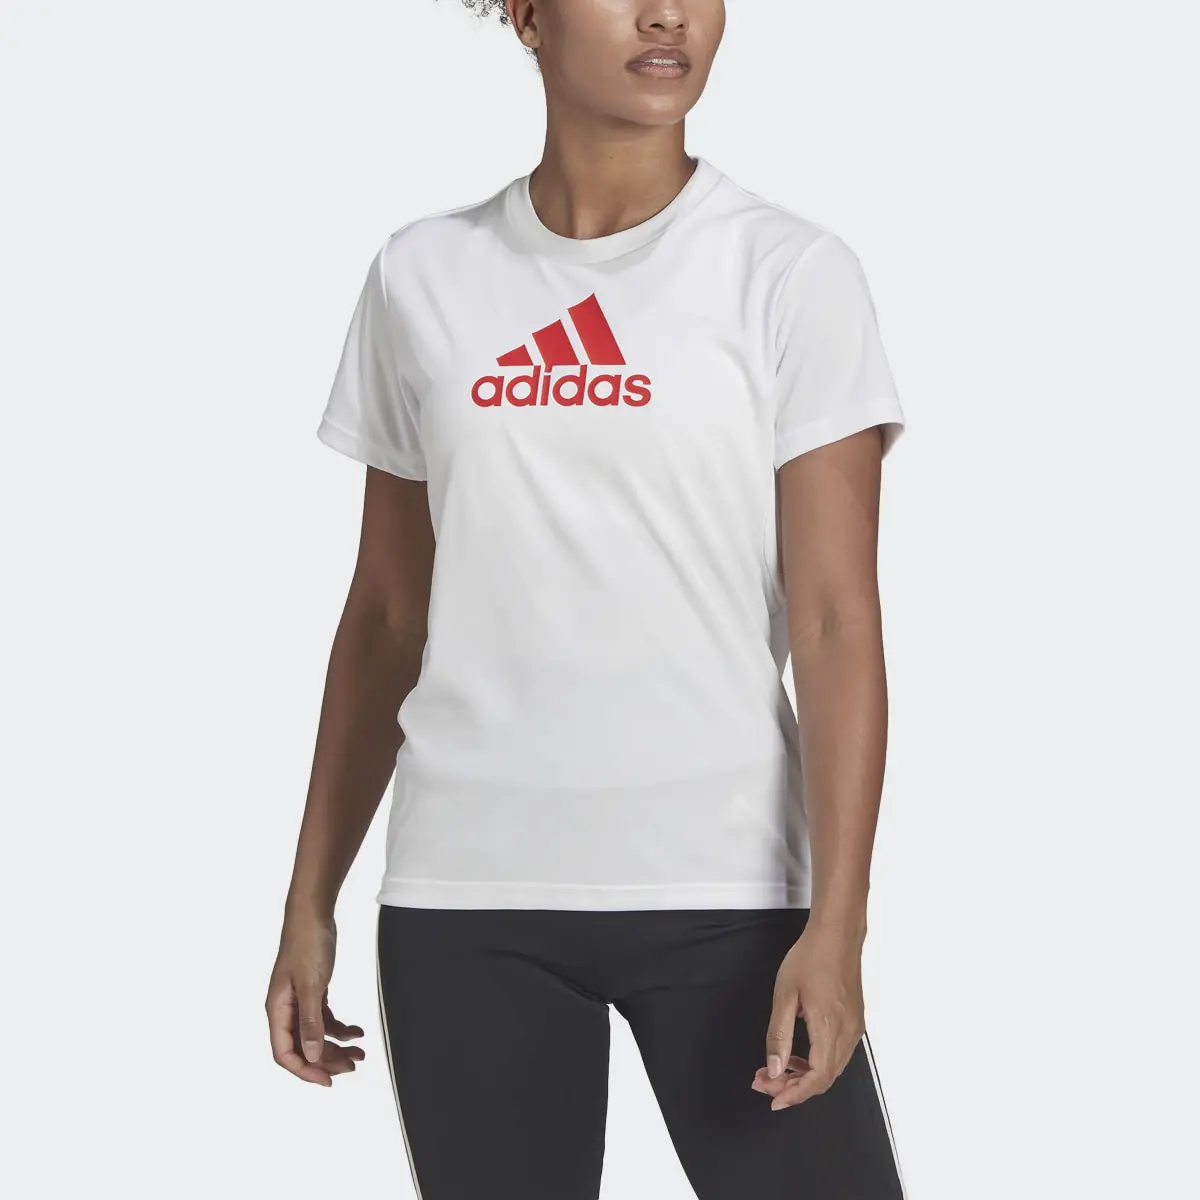 Adidas T-shirt Primeblue Sport Designed 2 Move. 1